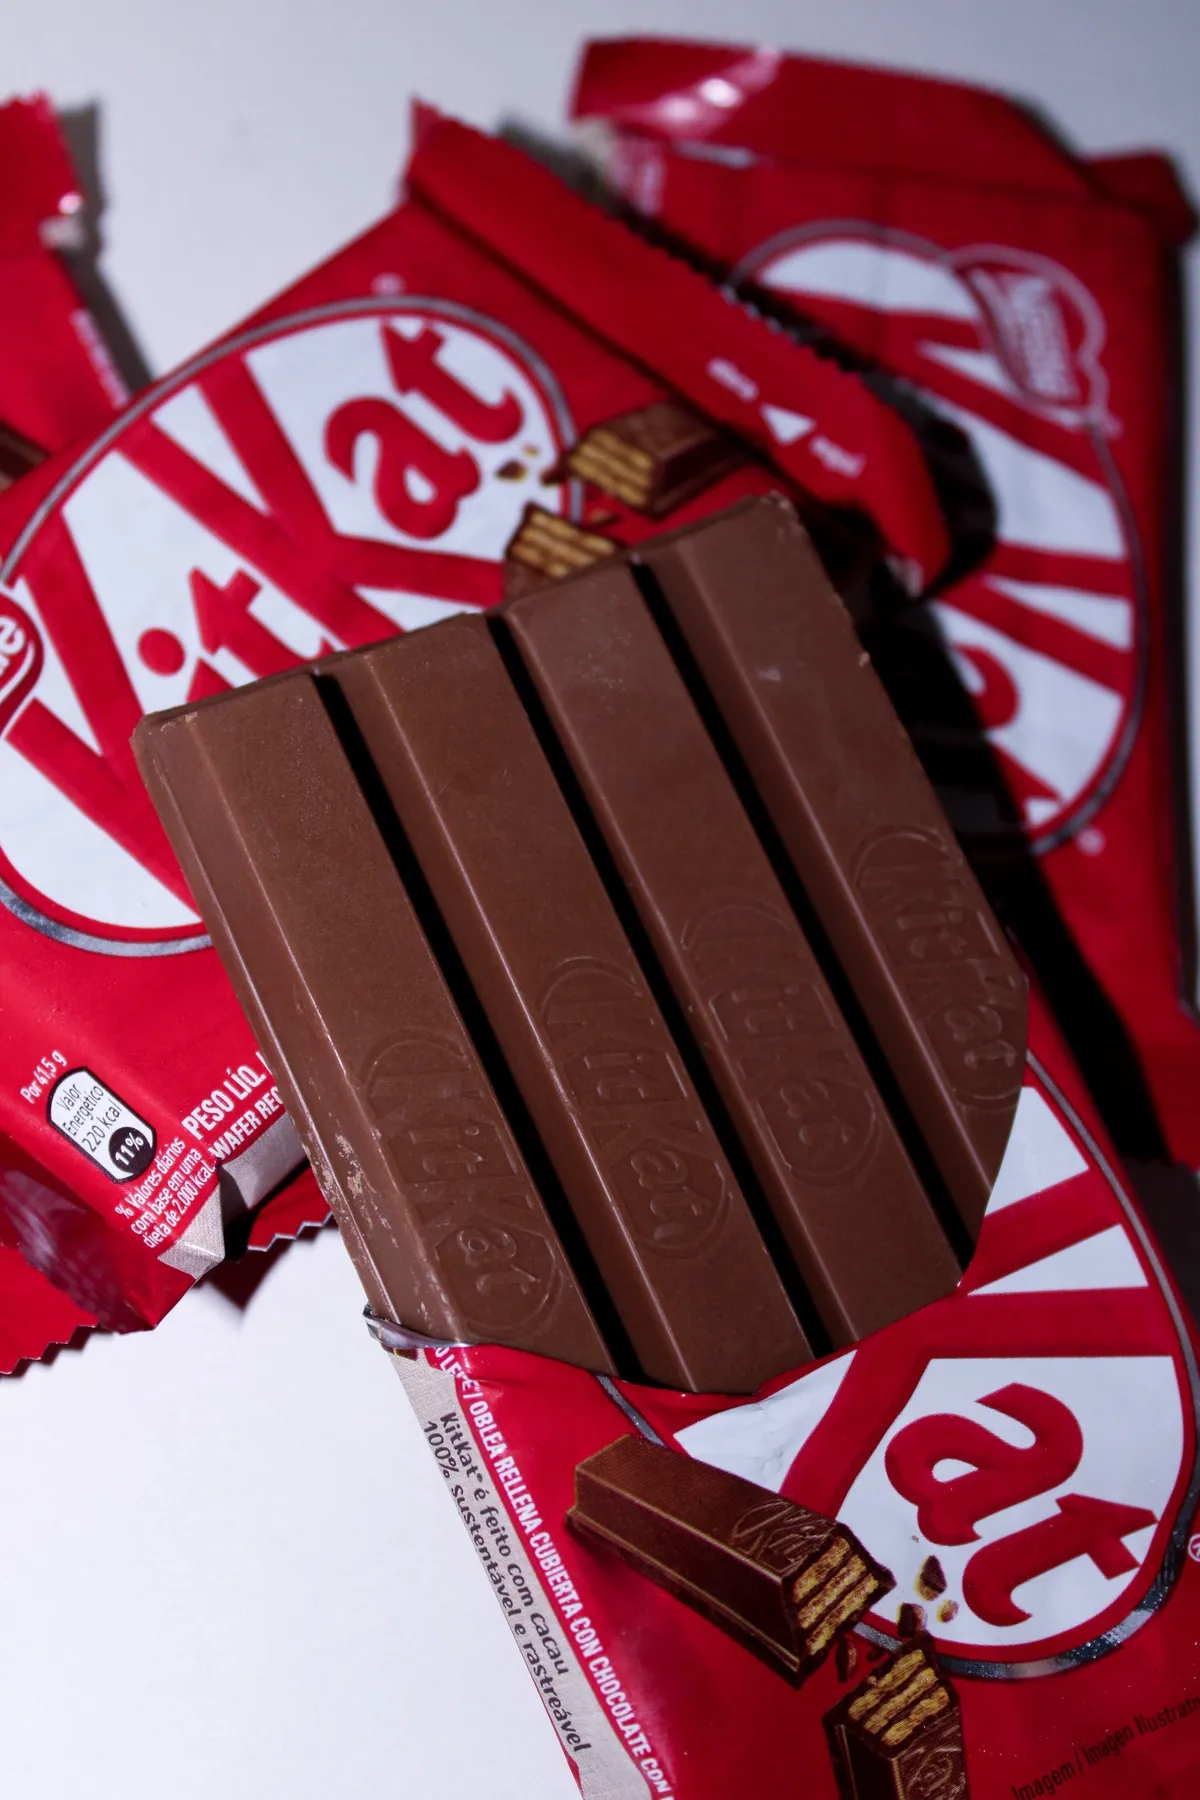 Barre de chocolat Kitkat | Source : Unsplash